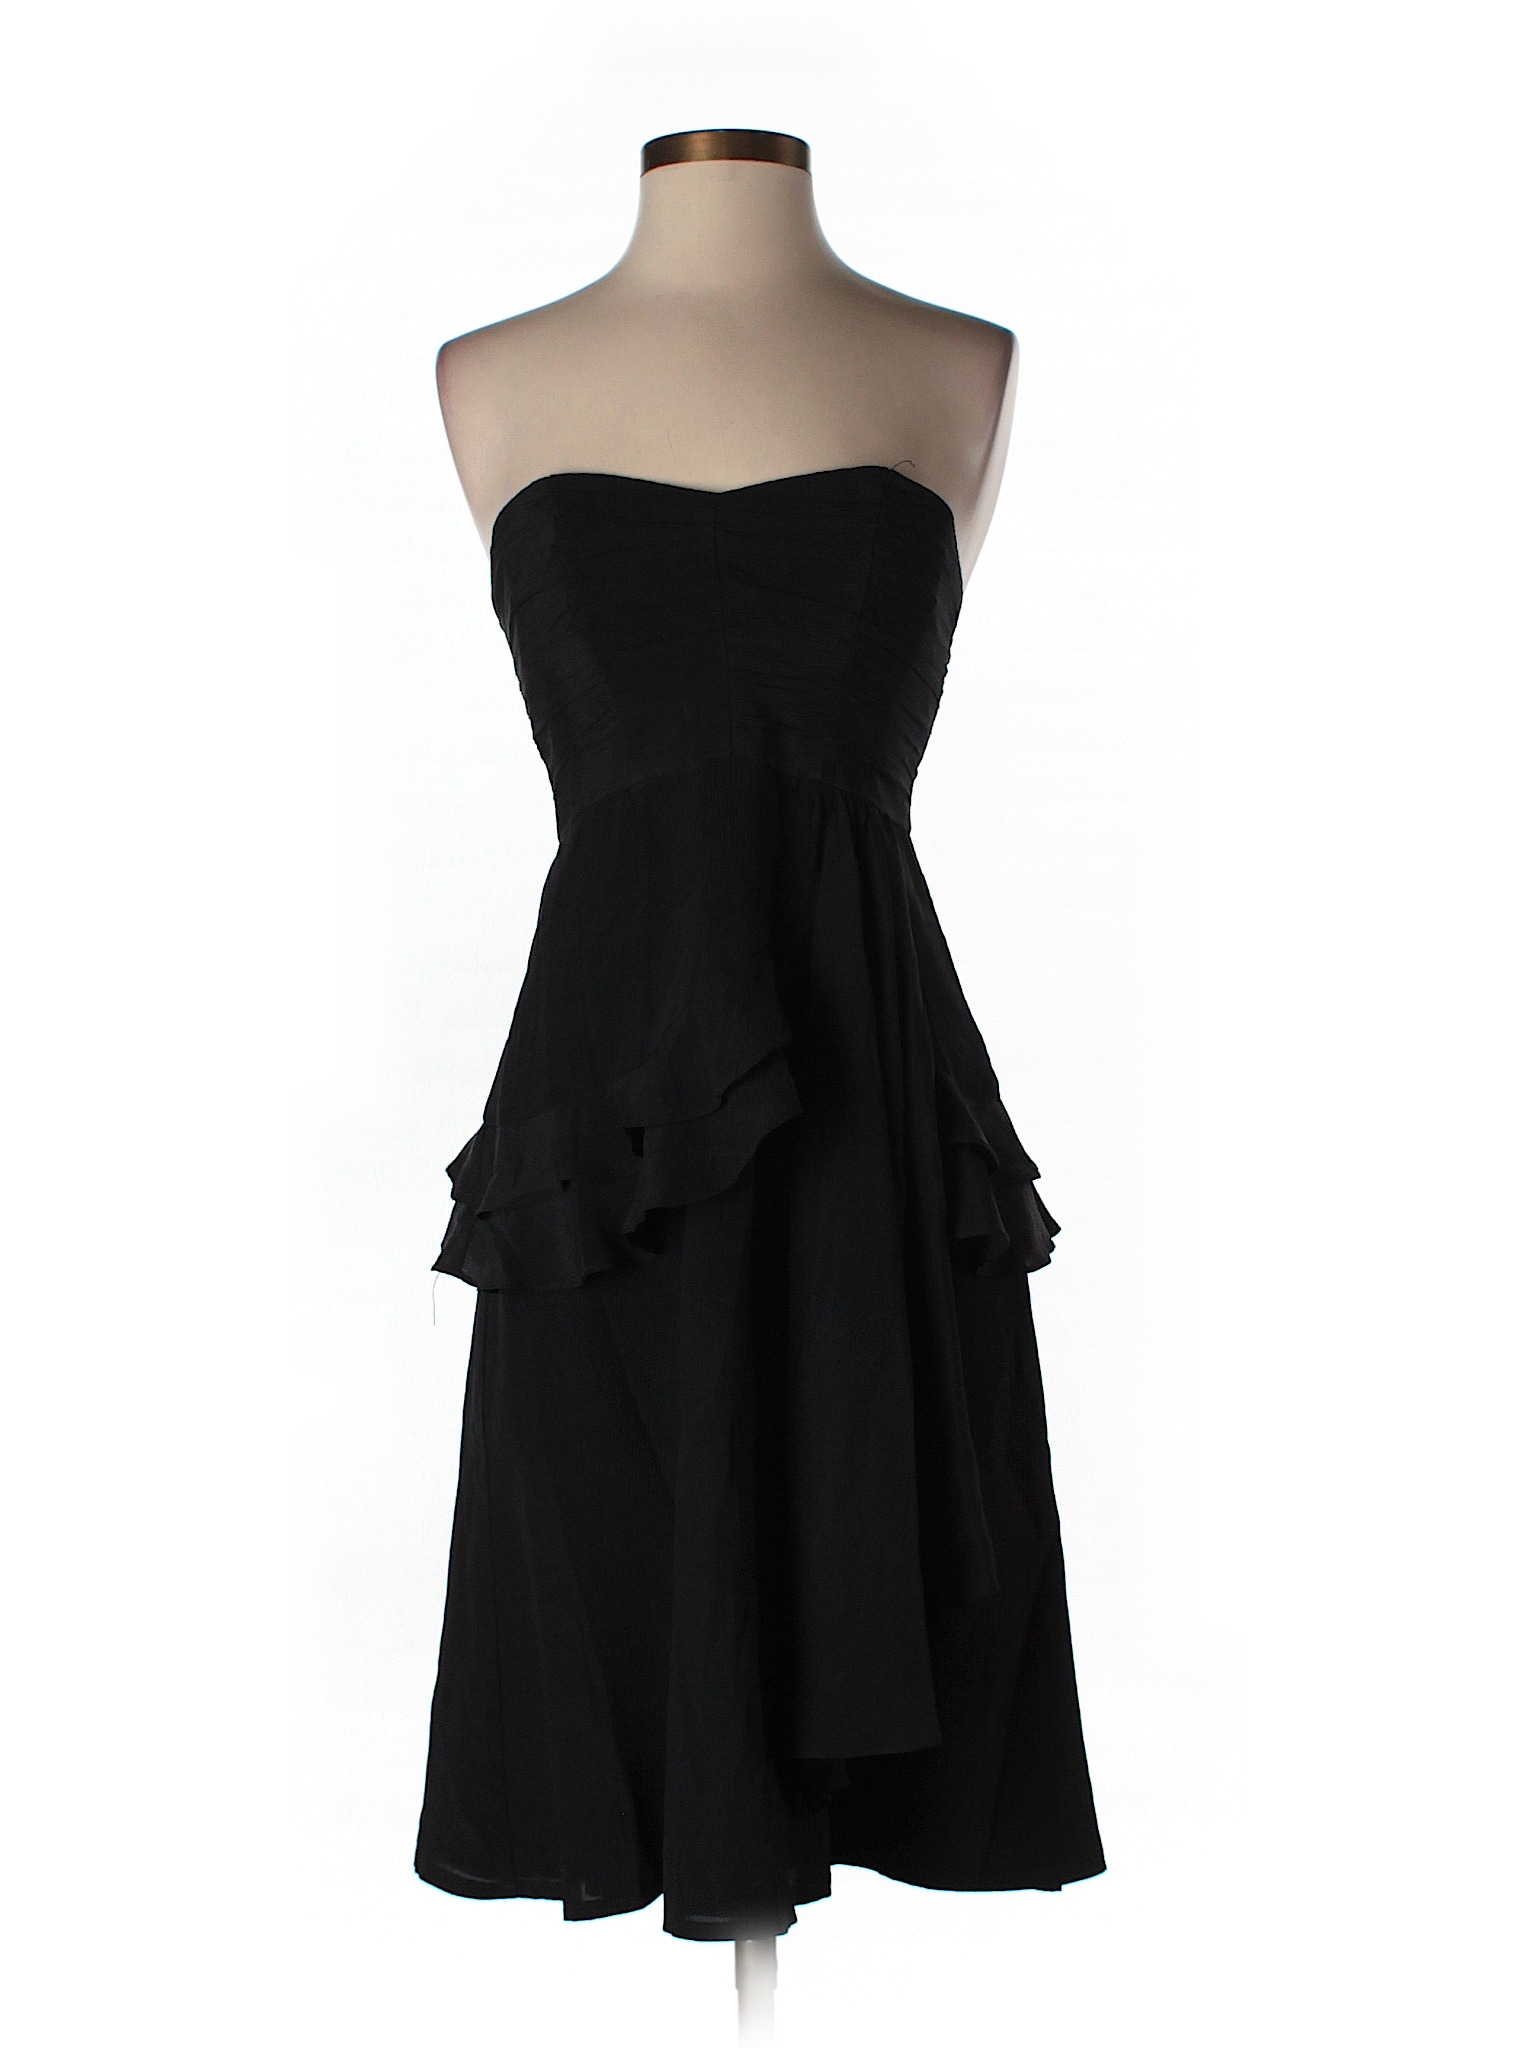 Nanette Lepore Solid Black Cocktail Dress Size 4 - 89% off | thredUP